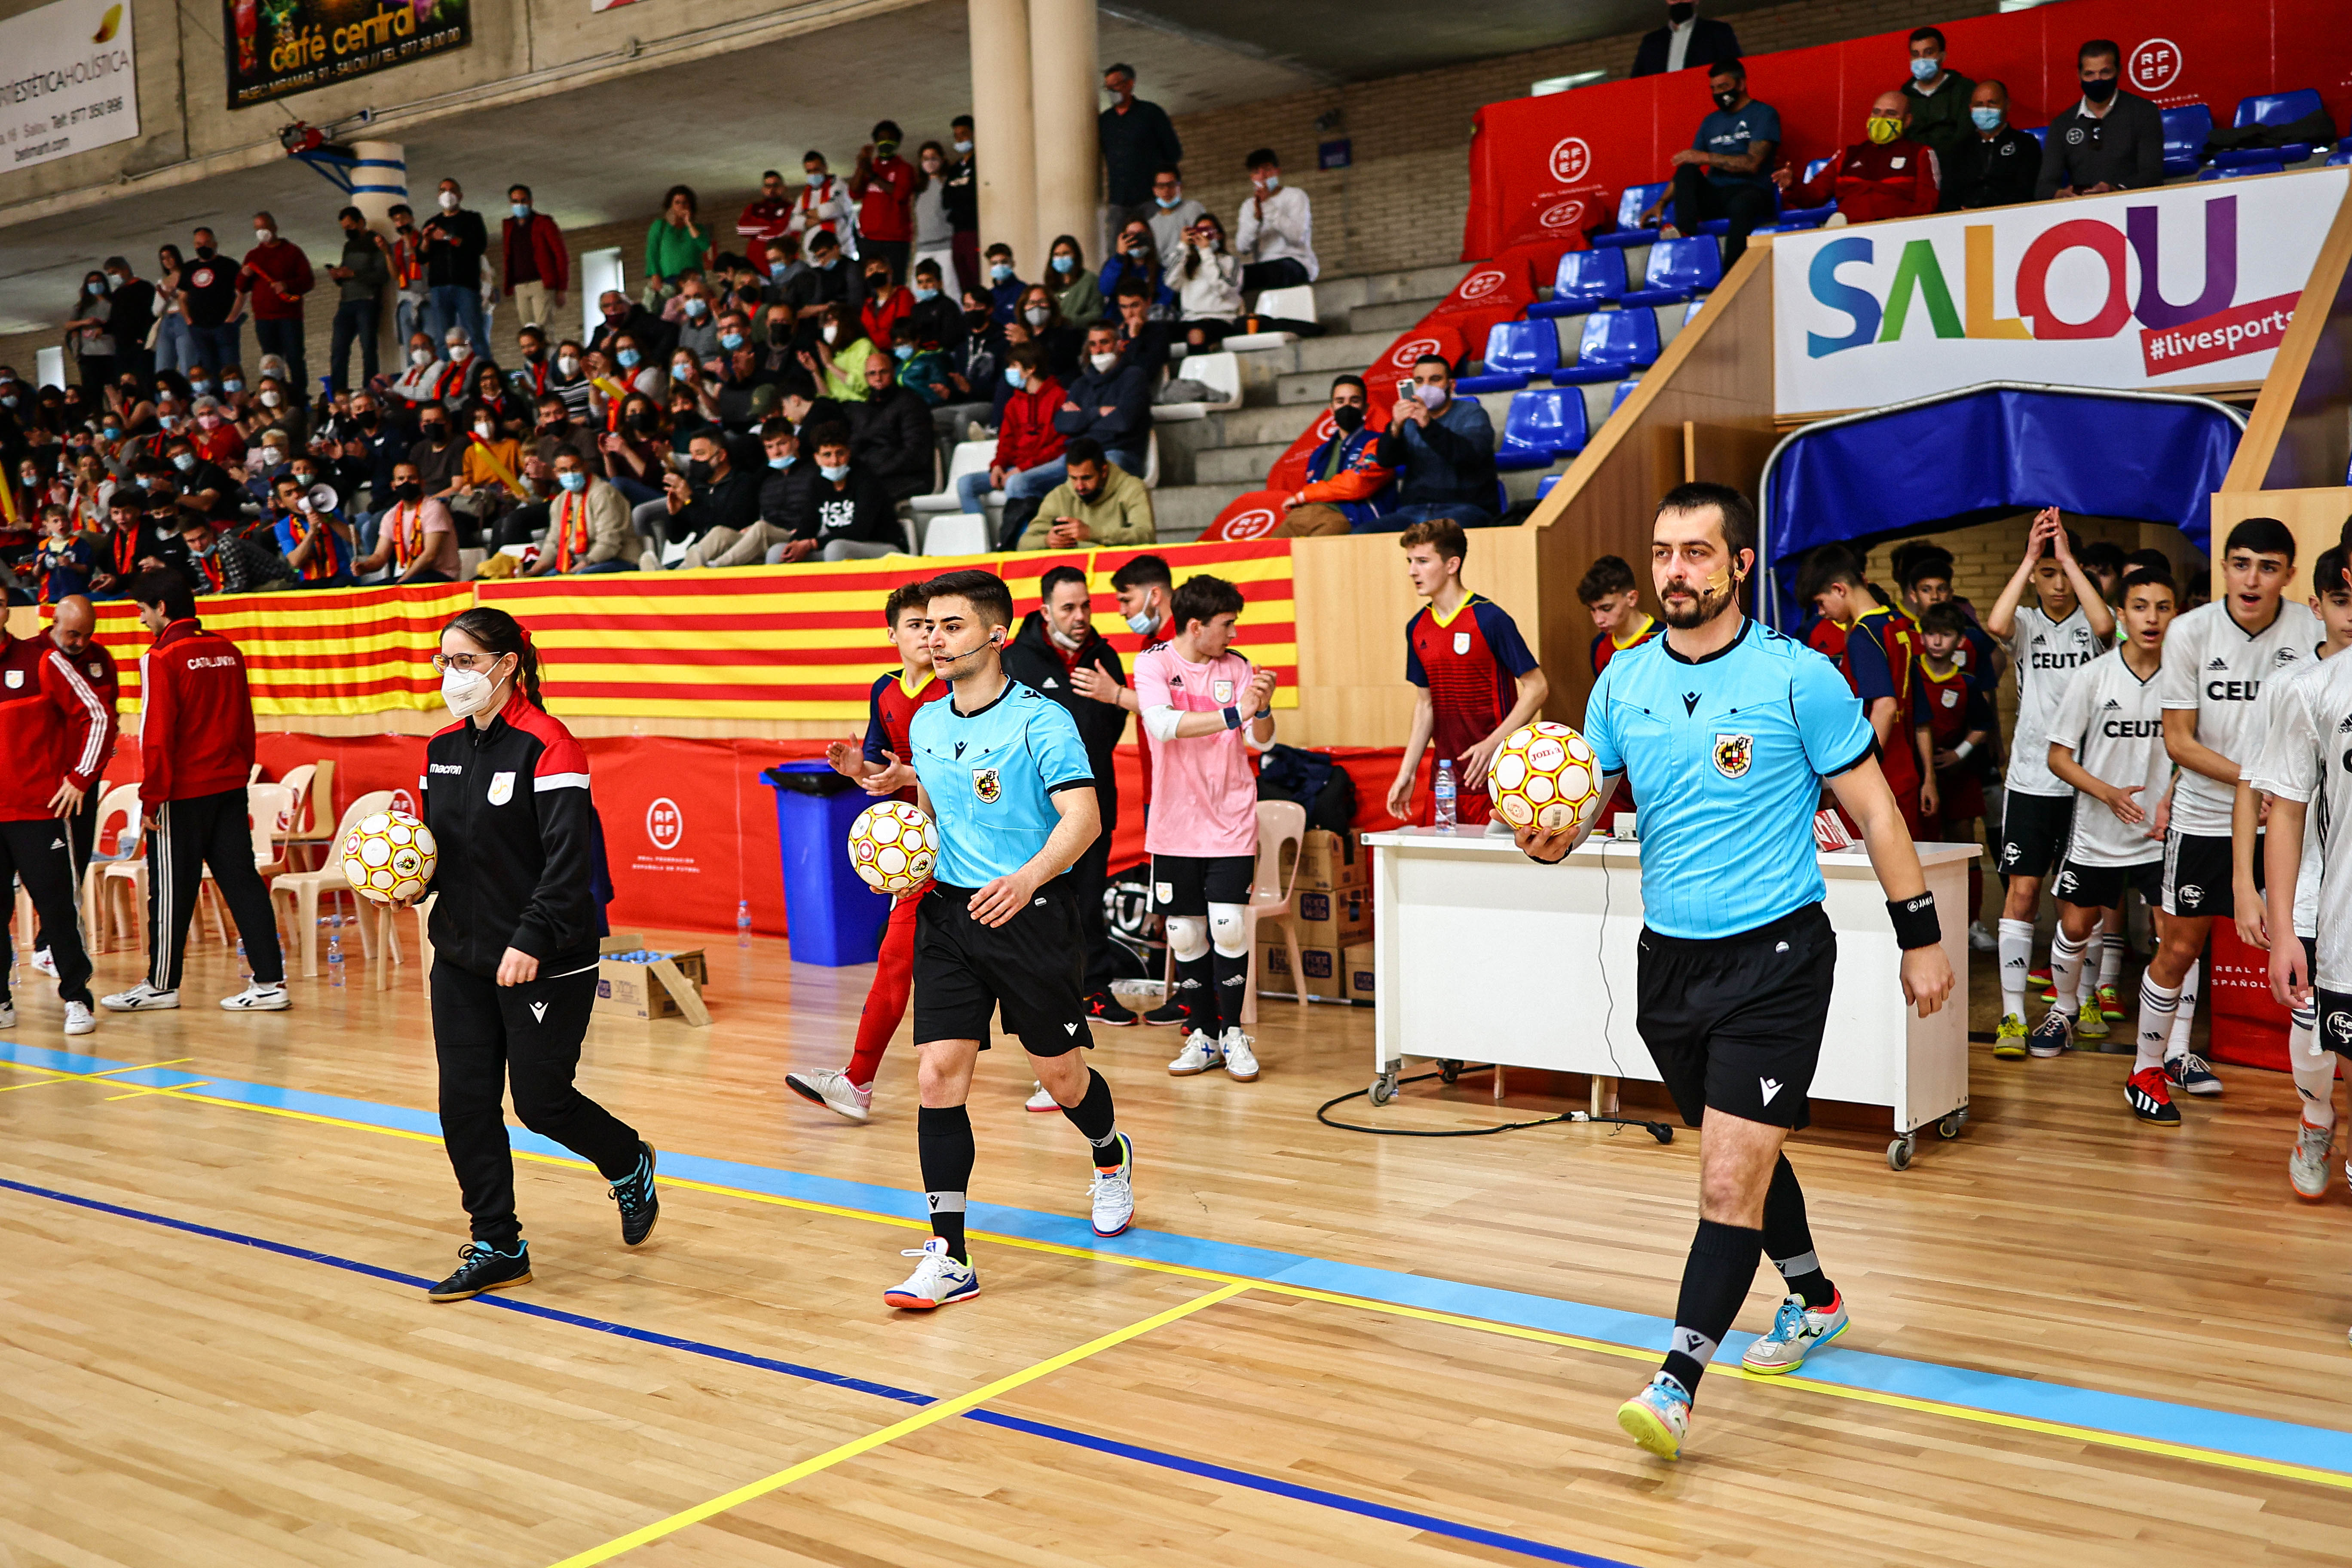 Ignasi Velasco xiulant les semifinals de Campionat d'Espanya a Salou